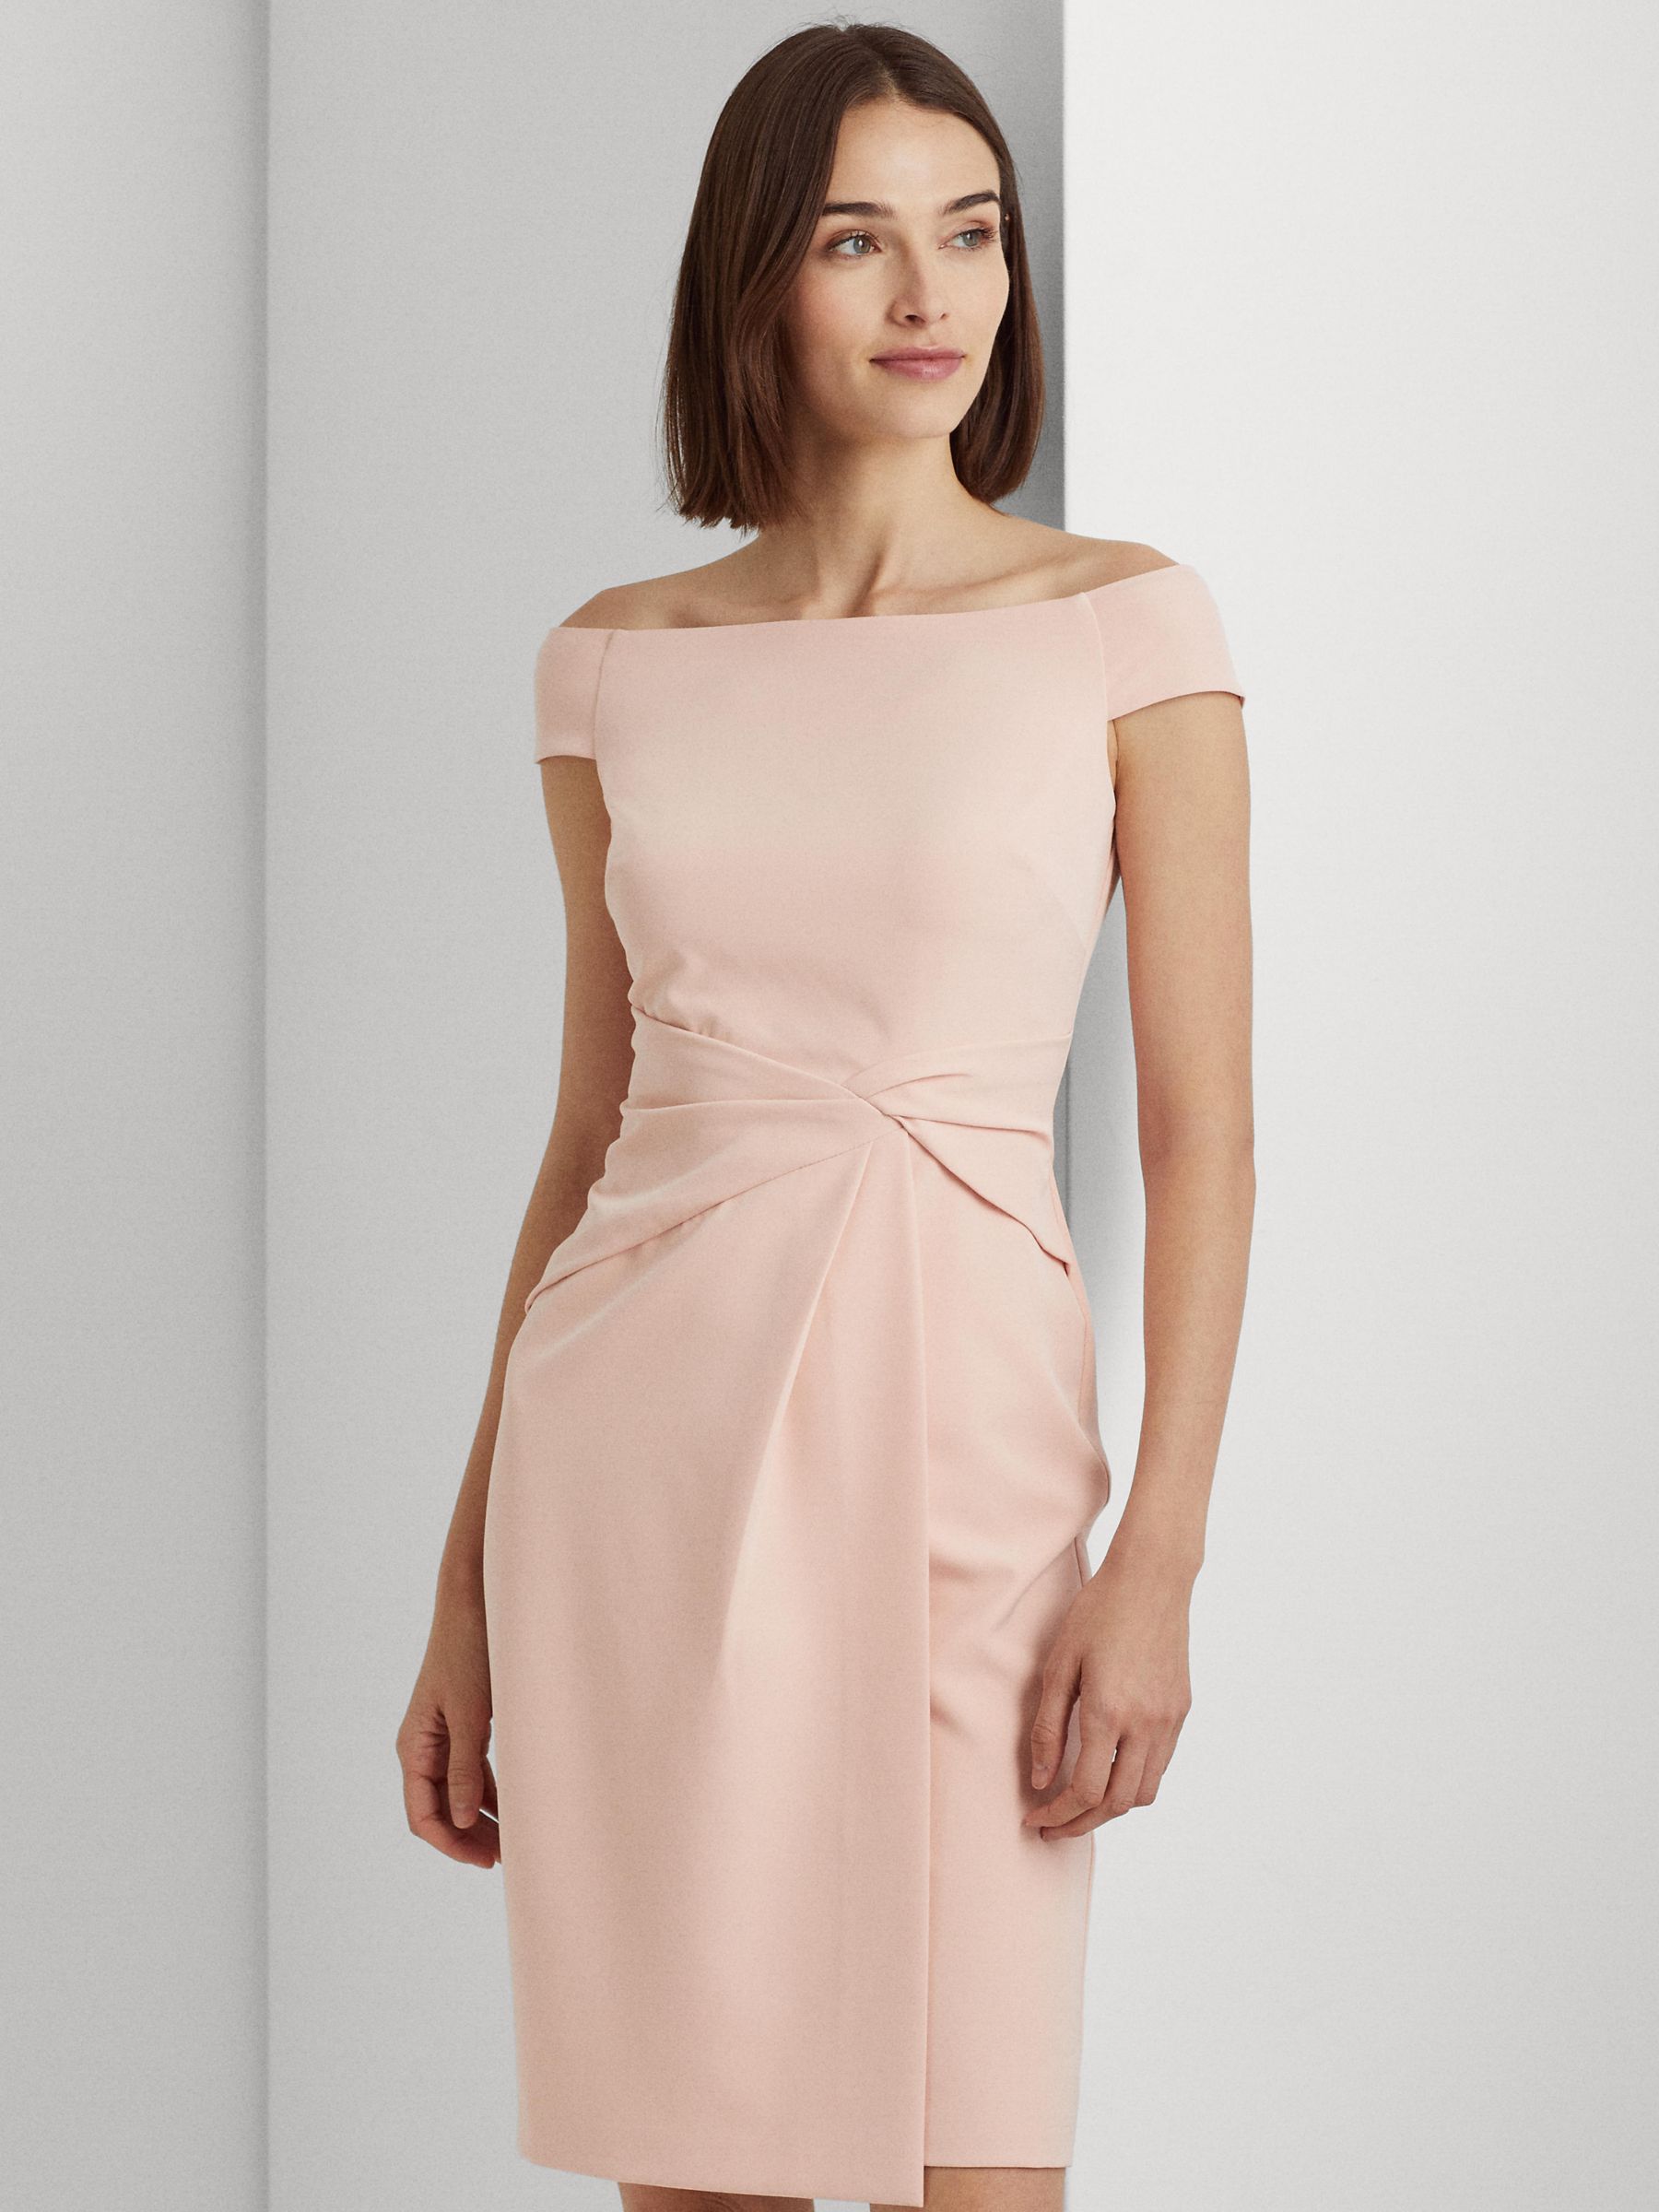 Ralph Lauren Leonidas Gown Mini Dress, Pale Pink at John Lewis & Partners